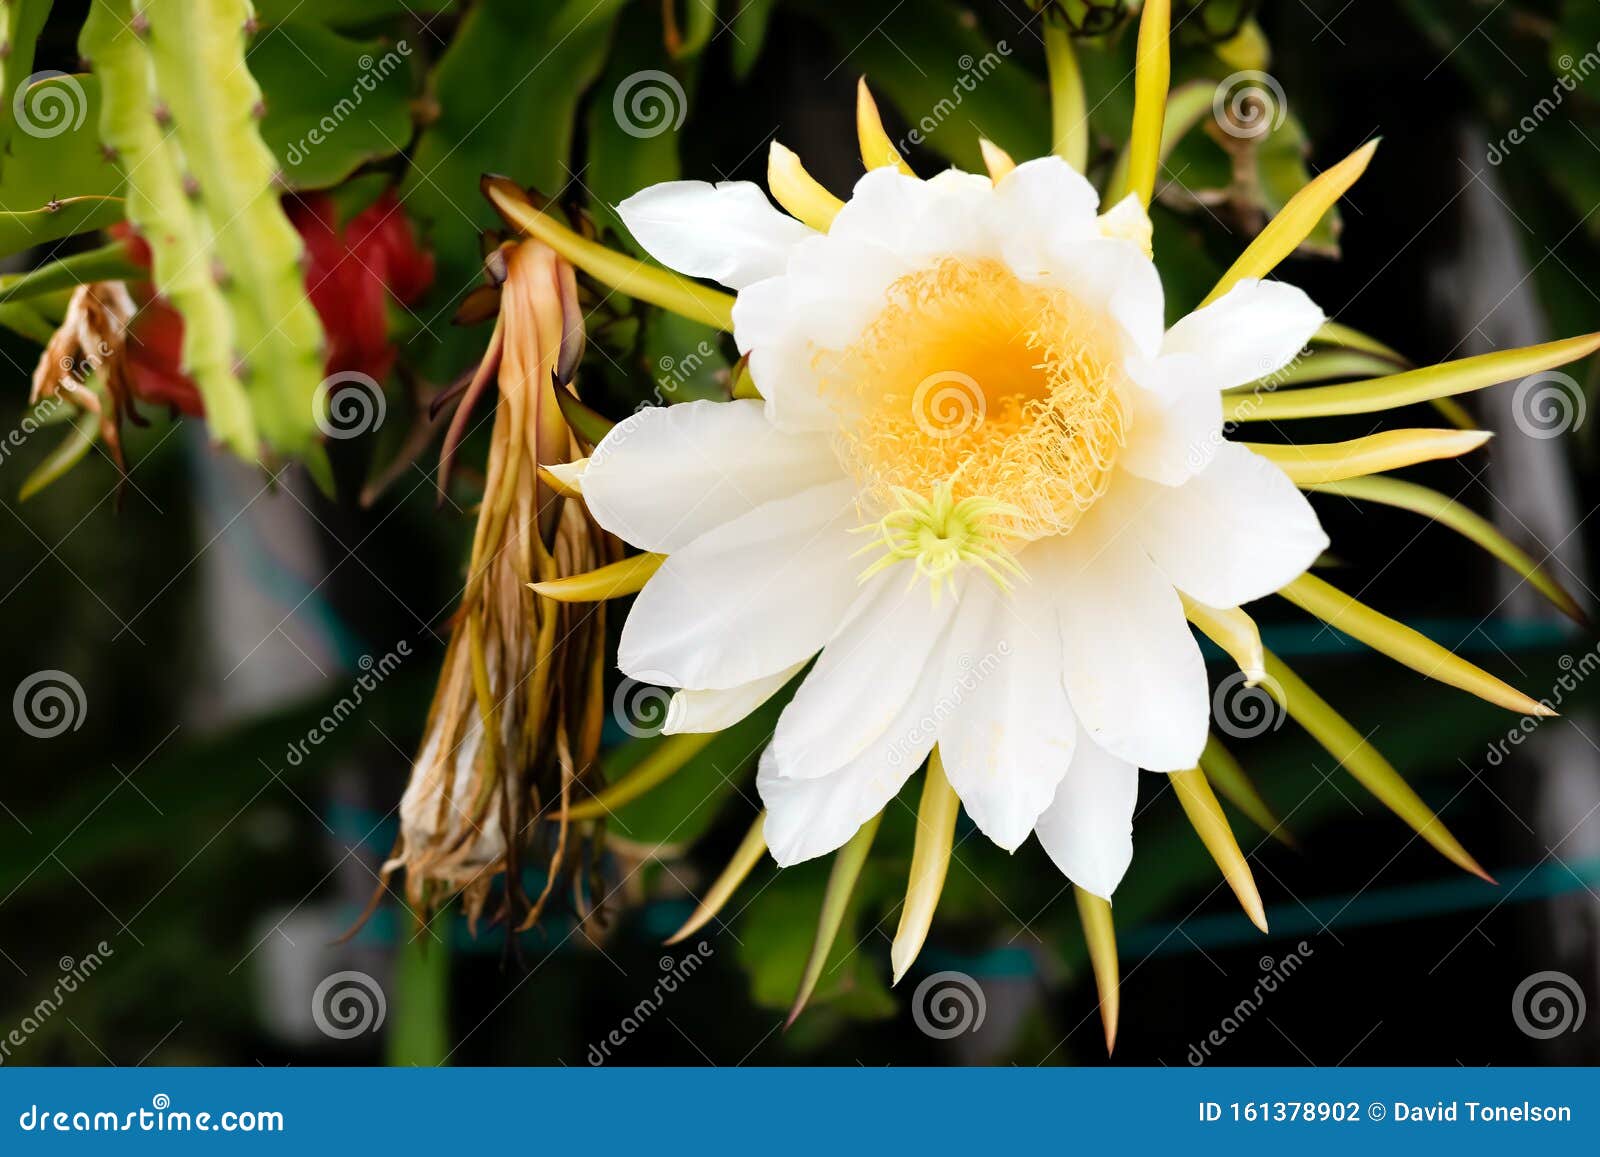 Flor y fruta de Pitaya foto de archivo. Imagen de fondo - 161378902